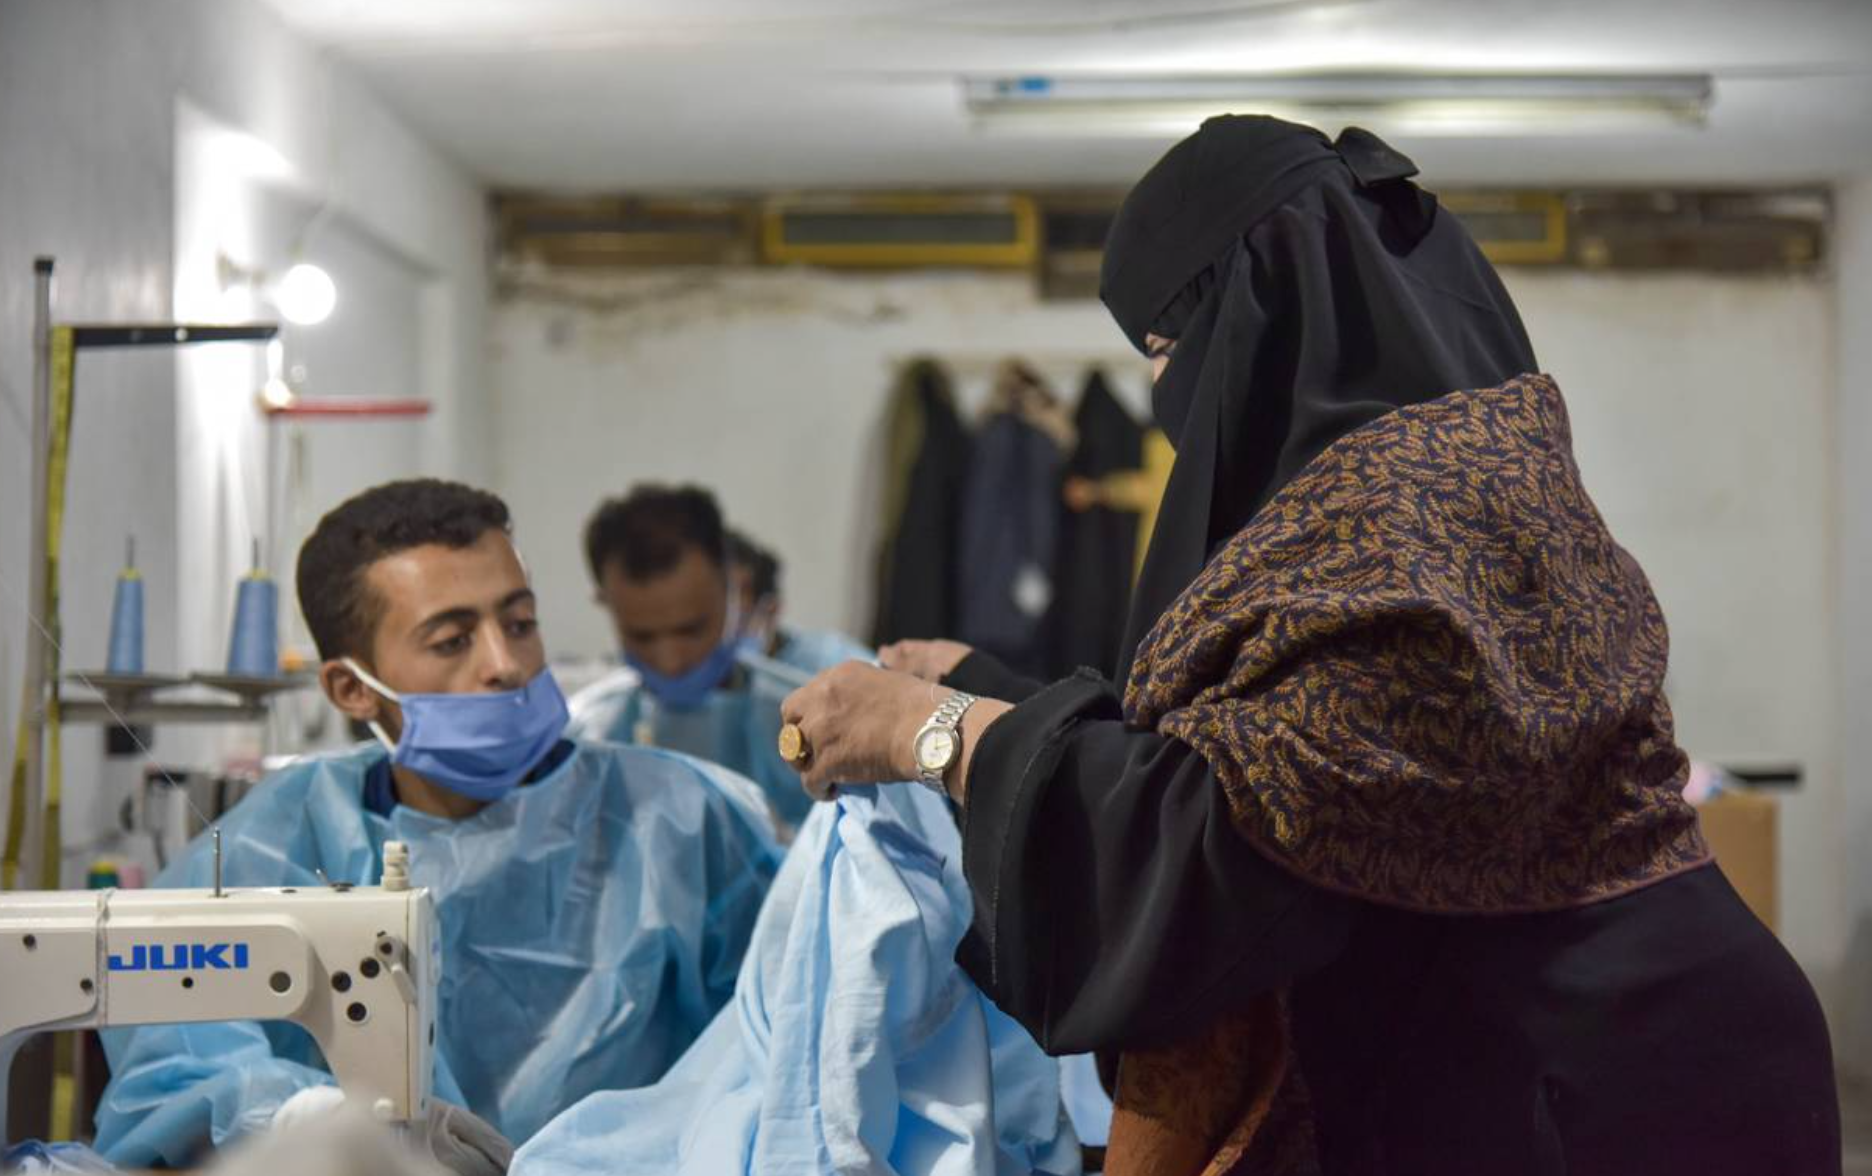 COVID and war push Yemen’s businesswomen to smash taboos